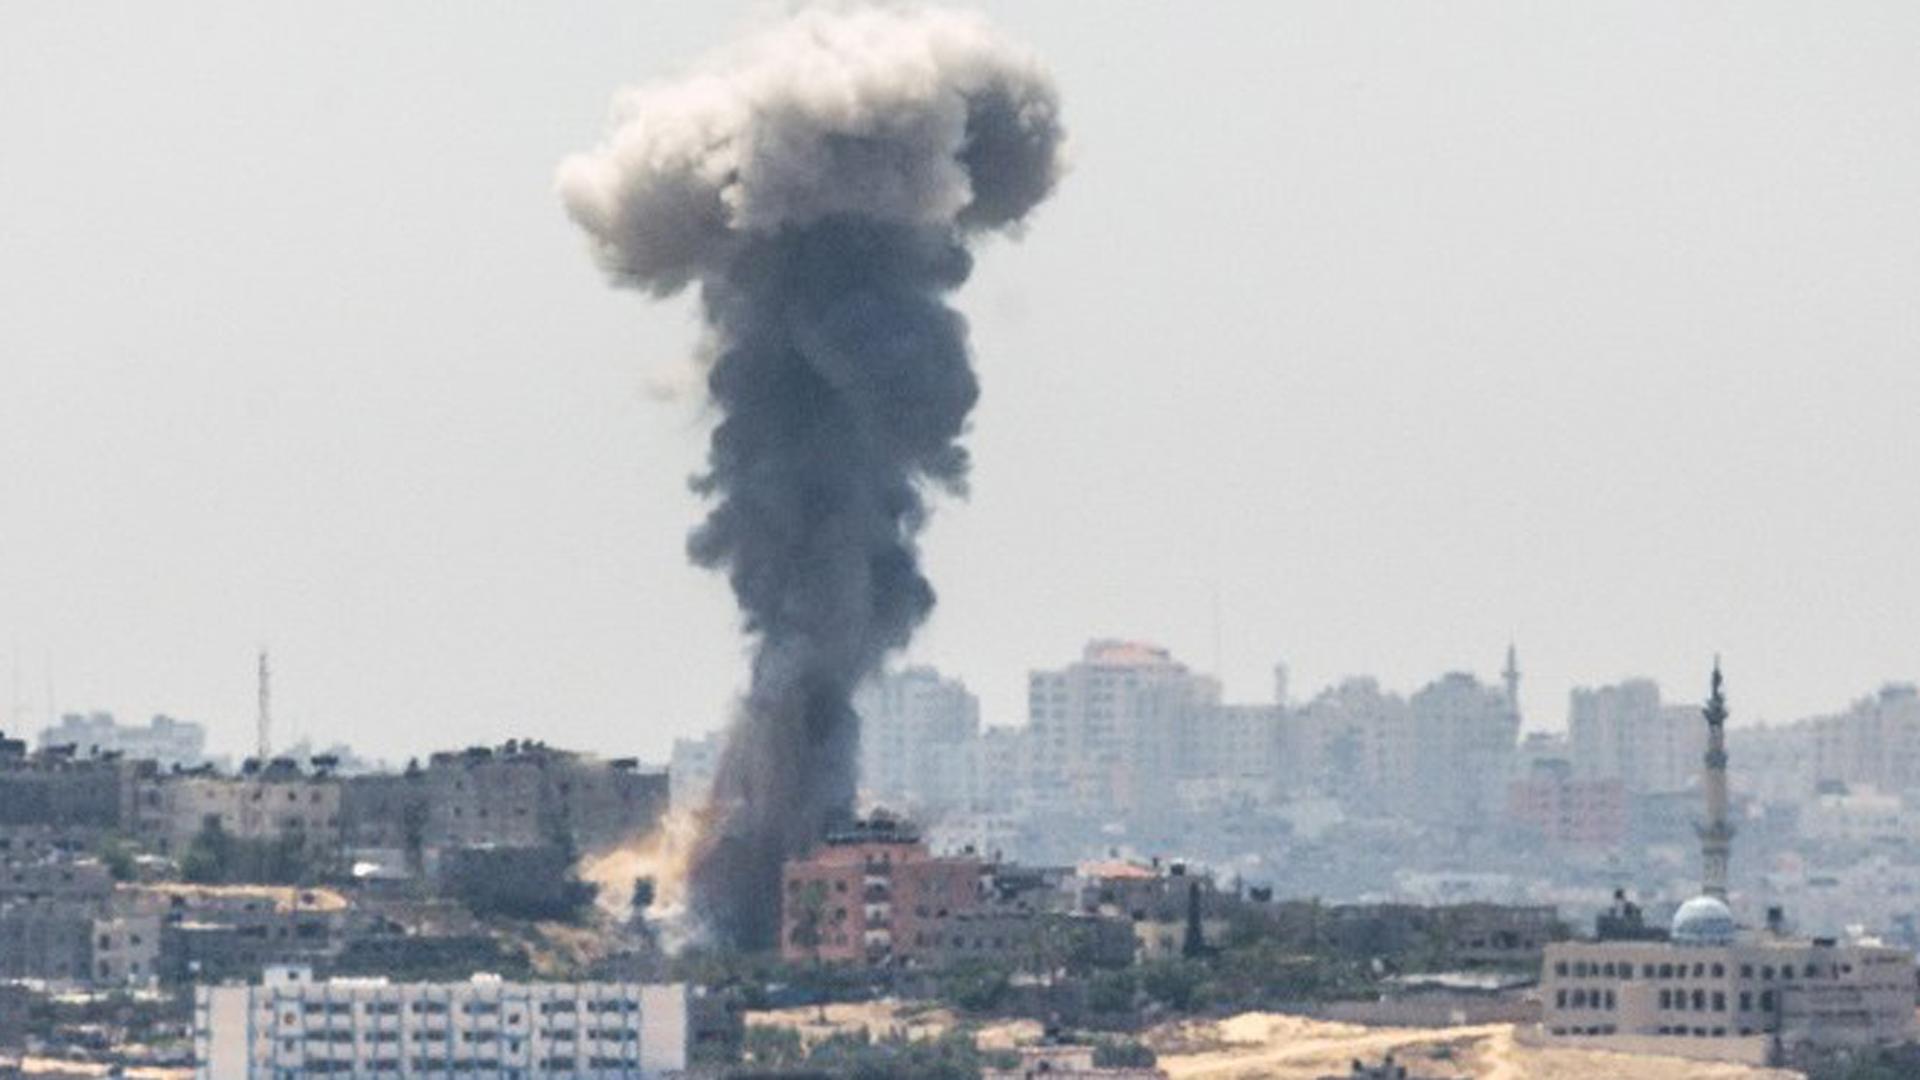 Die israelische Luftwaffe hat Ziele im Gaza-Streifen beschossen, Rauch steigt auf.